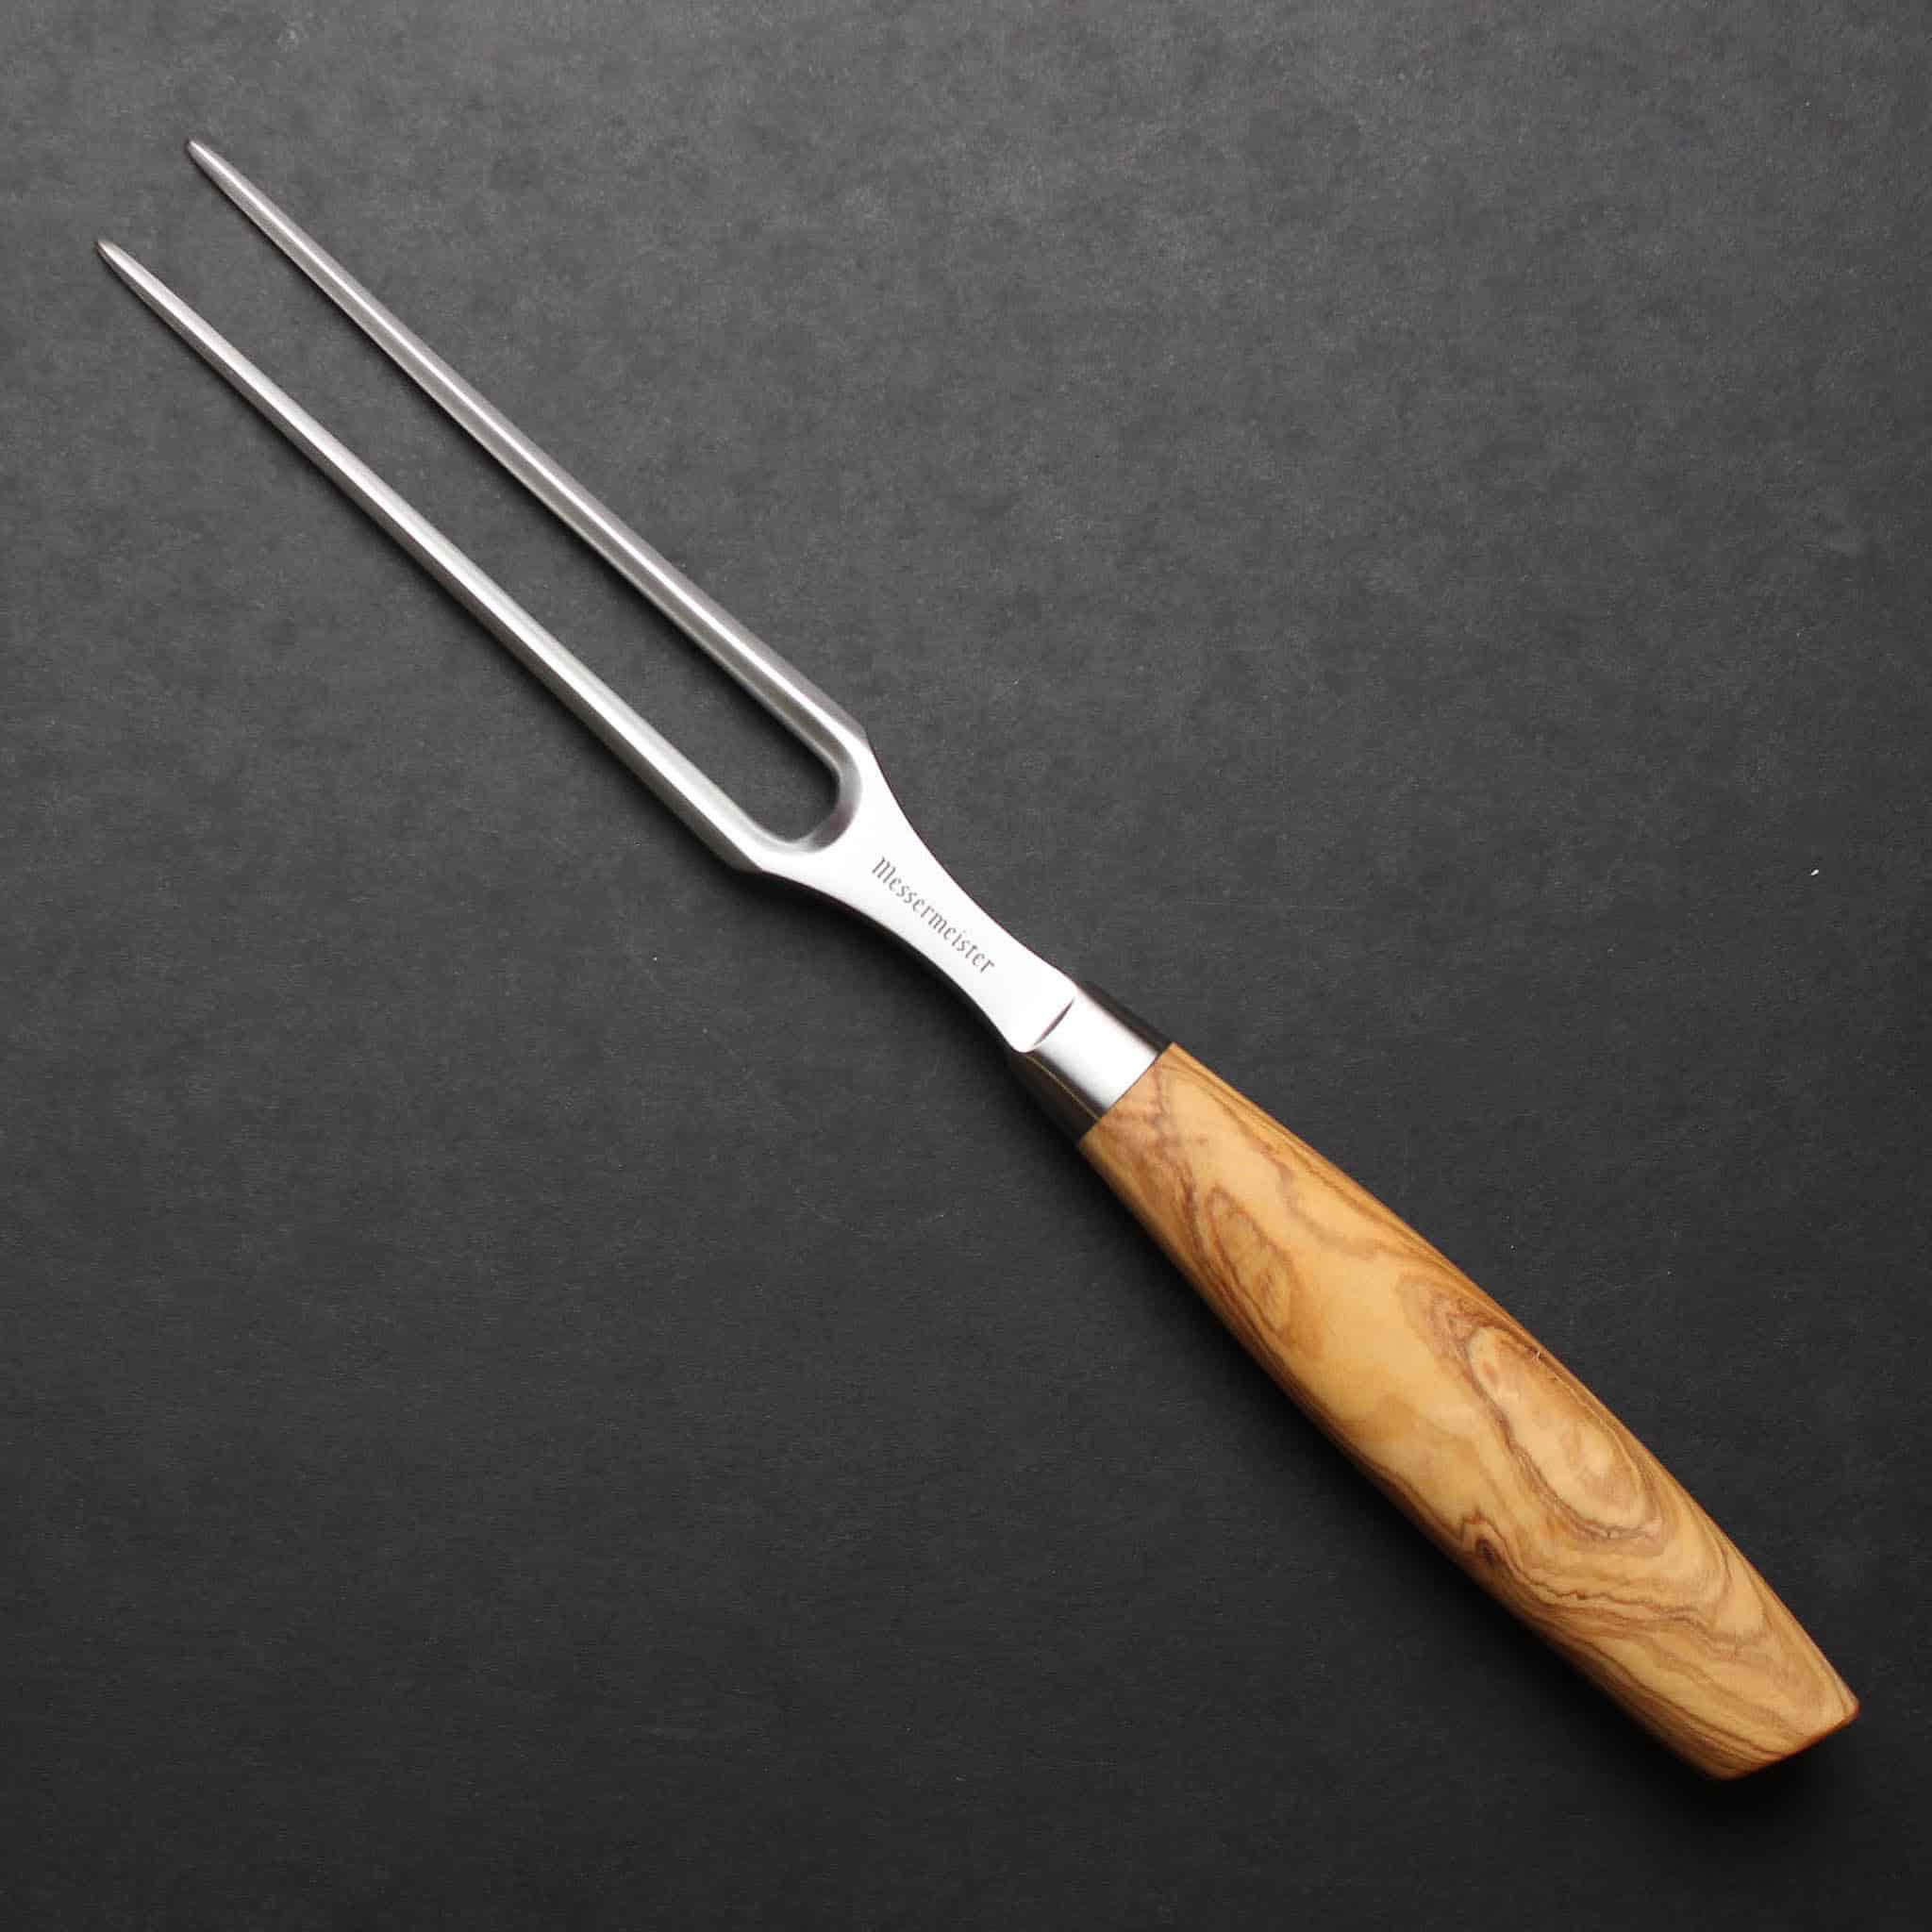 Messermeister Oliva Luxe Carving Fork, 16.5cm